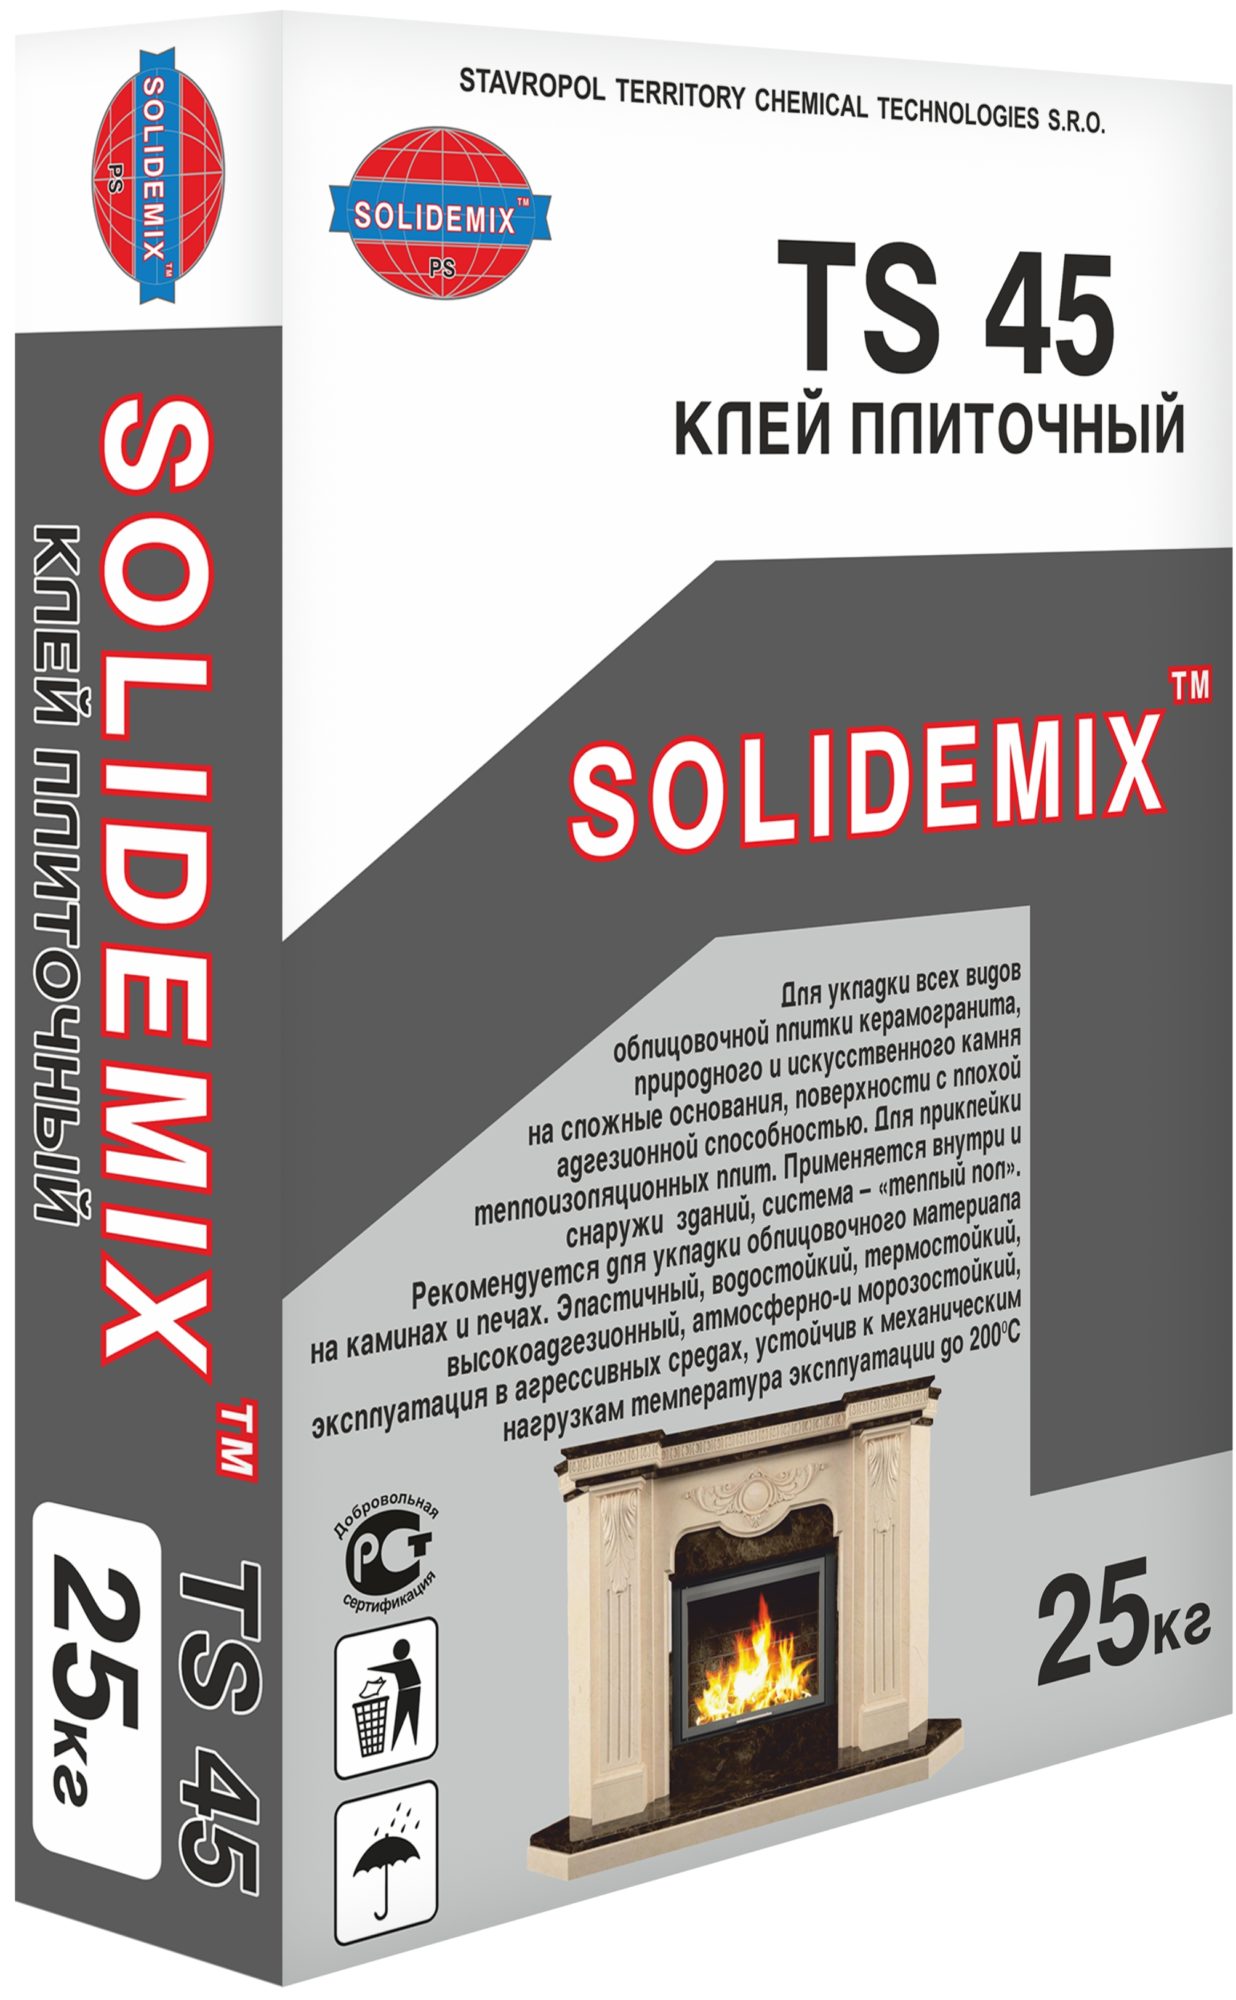 Купить Клей плиточный TS 45 от SOLIDEMIX